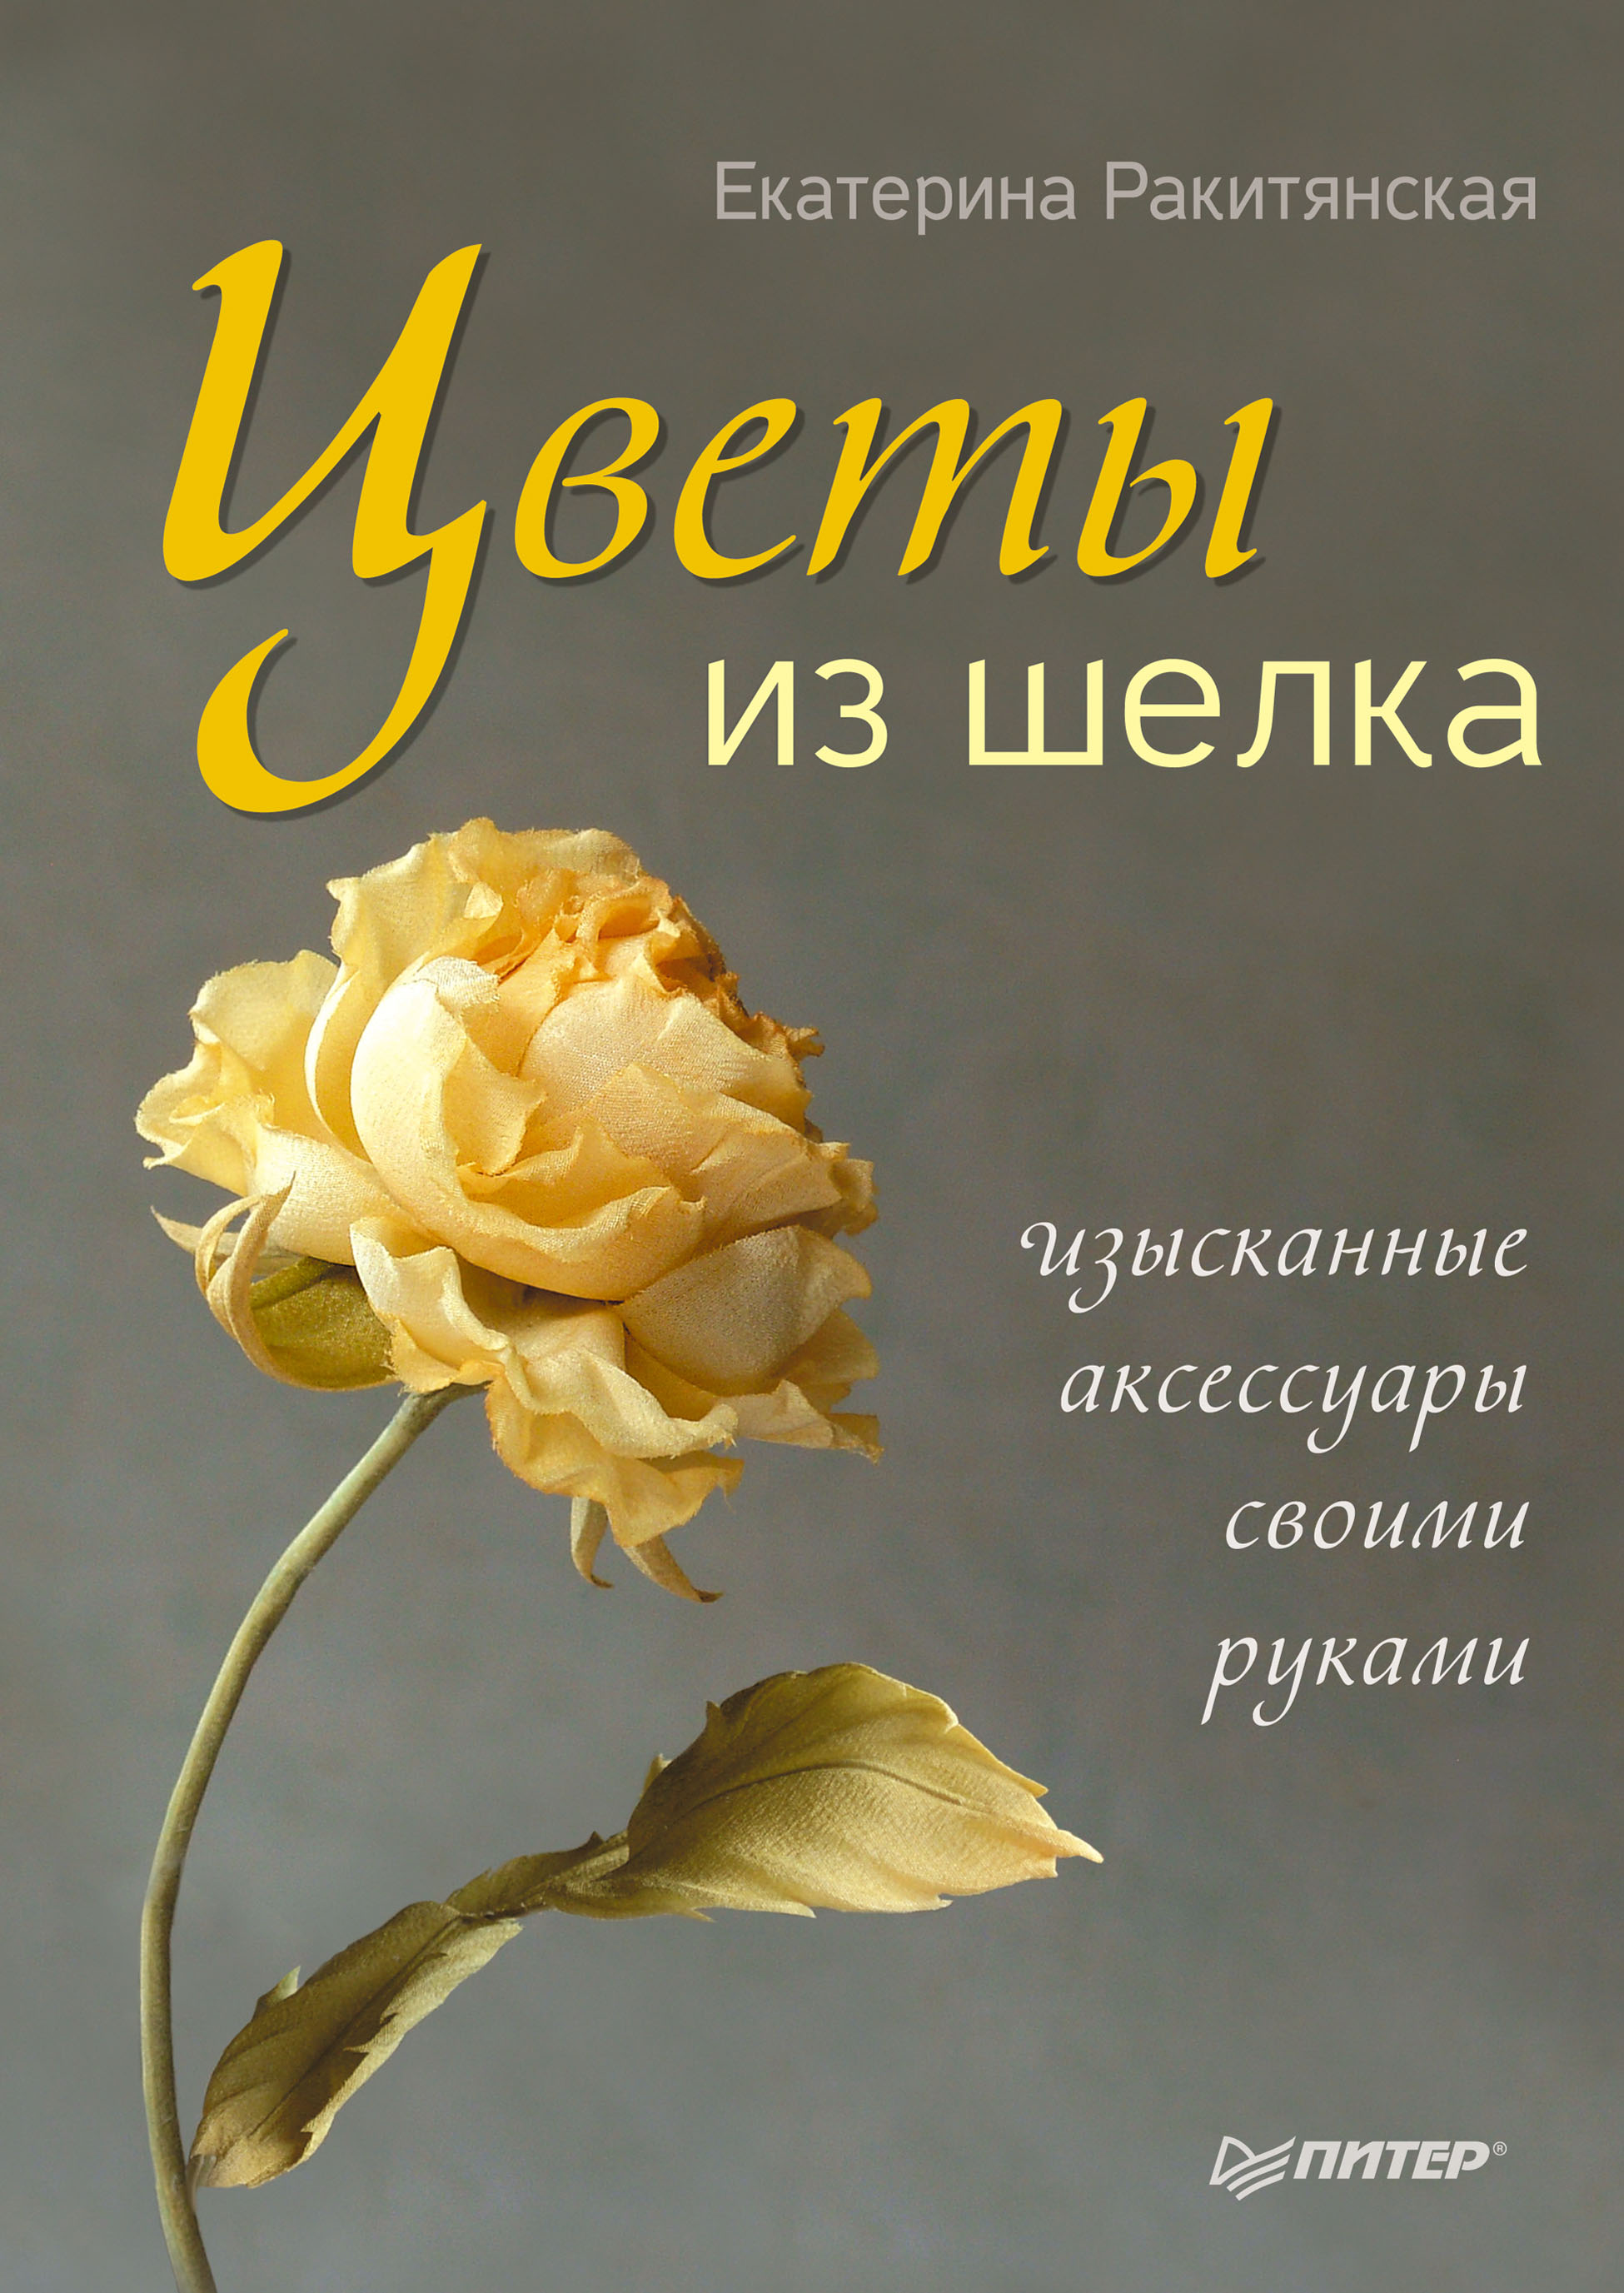 Цветы из бумаги своими руками по пошаговым фото для начинающих | pizzastr.ru